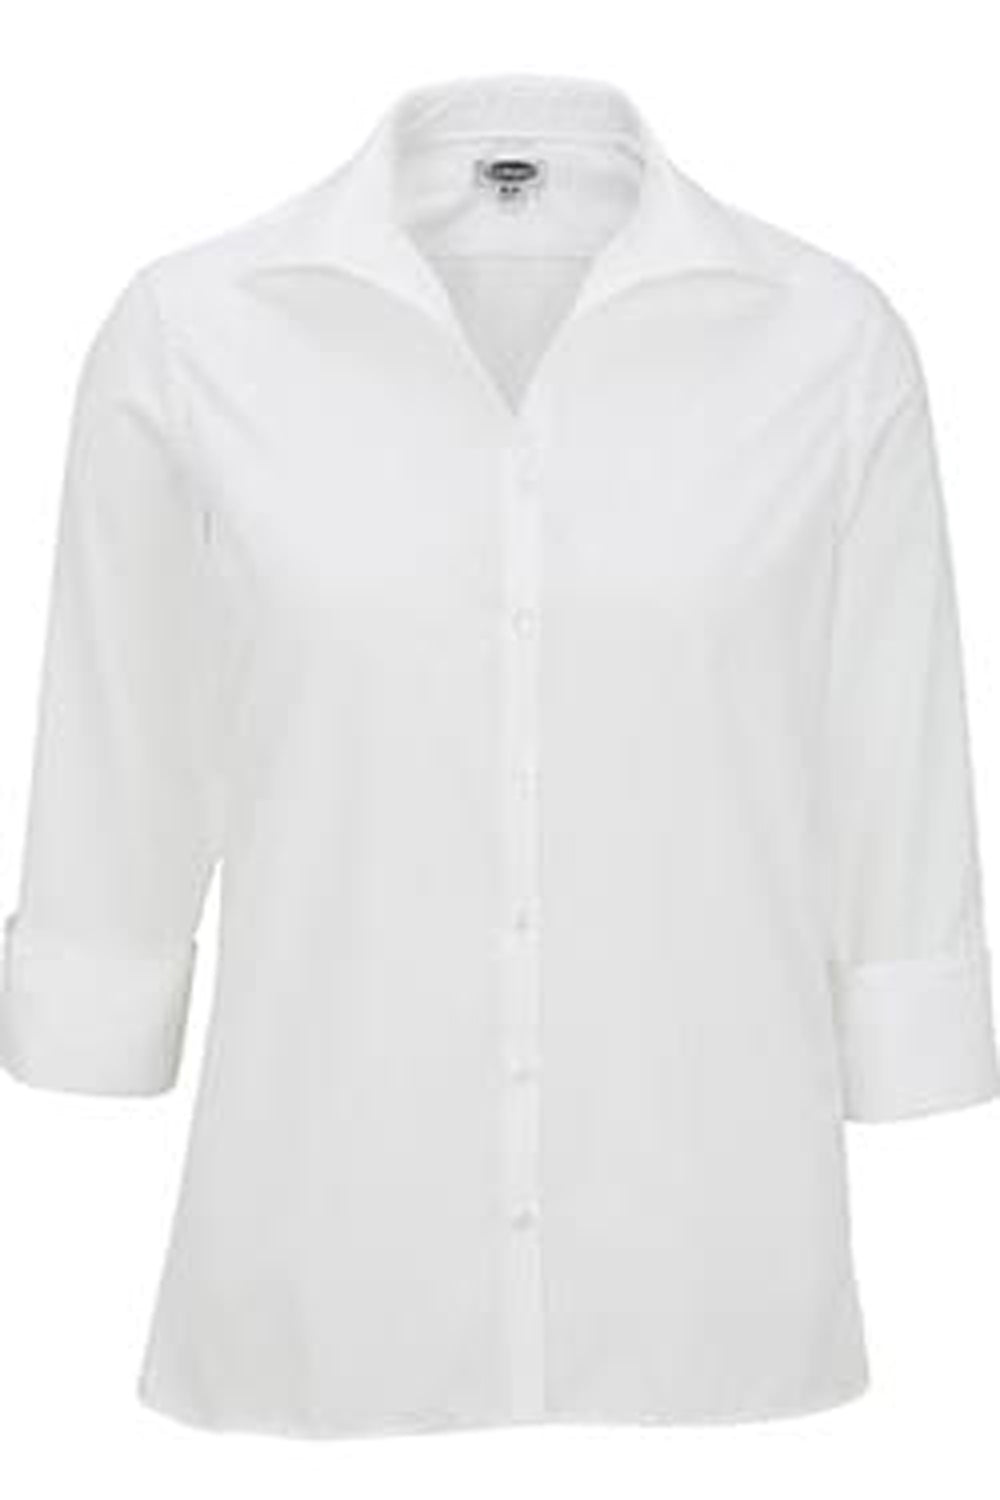 Edwards XXS Ladies' 3/4 Sleeve Poplin - White